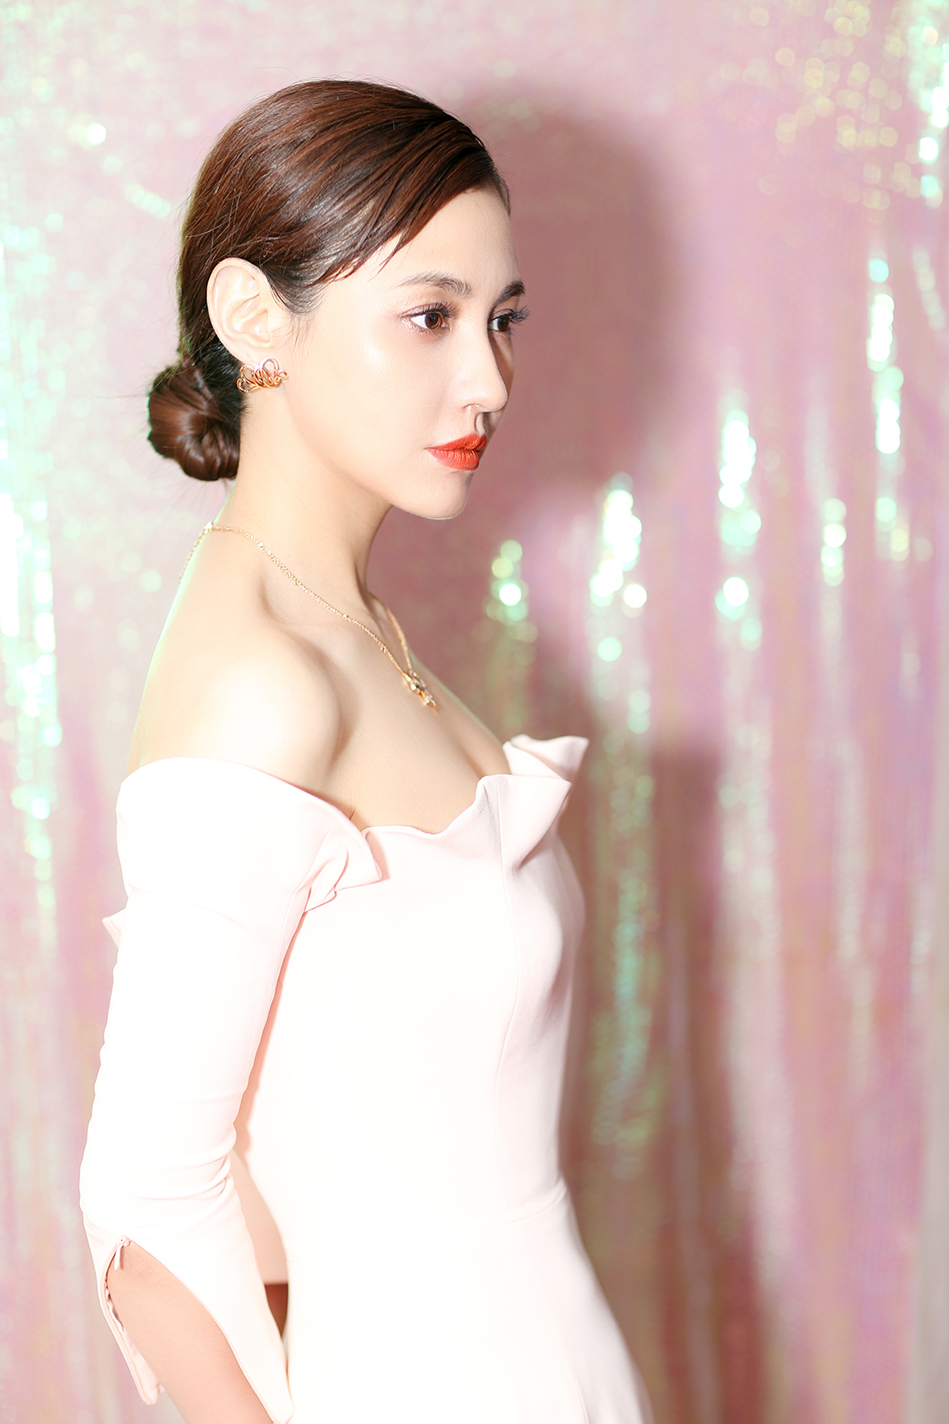 杨雪最新粉色长裙写真曝光 优雅迷人女神气质尽显